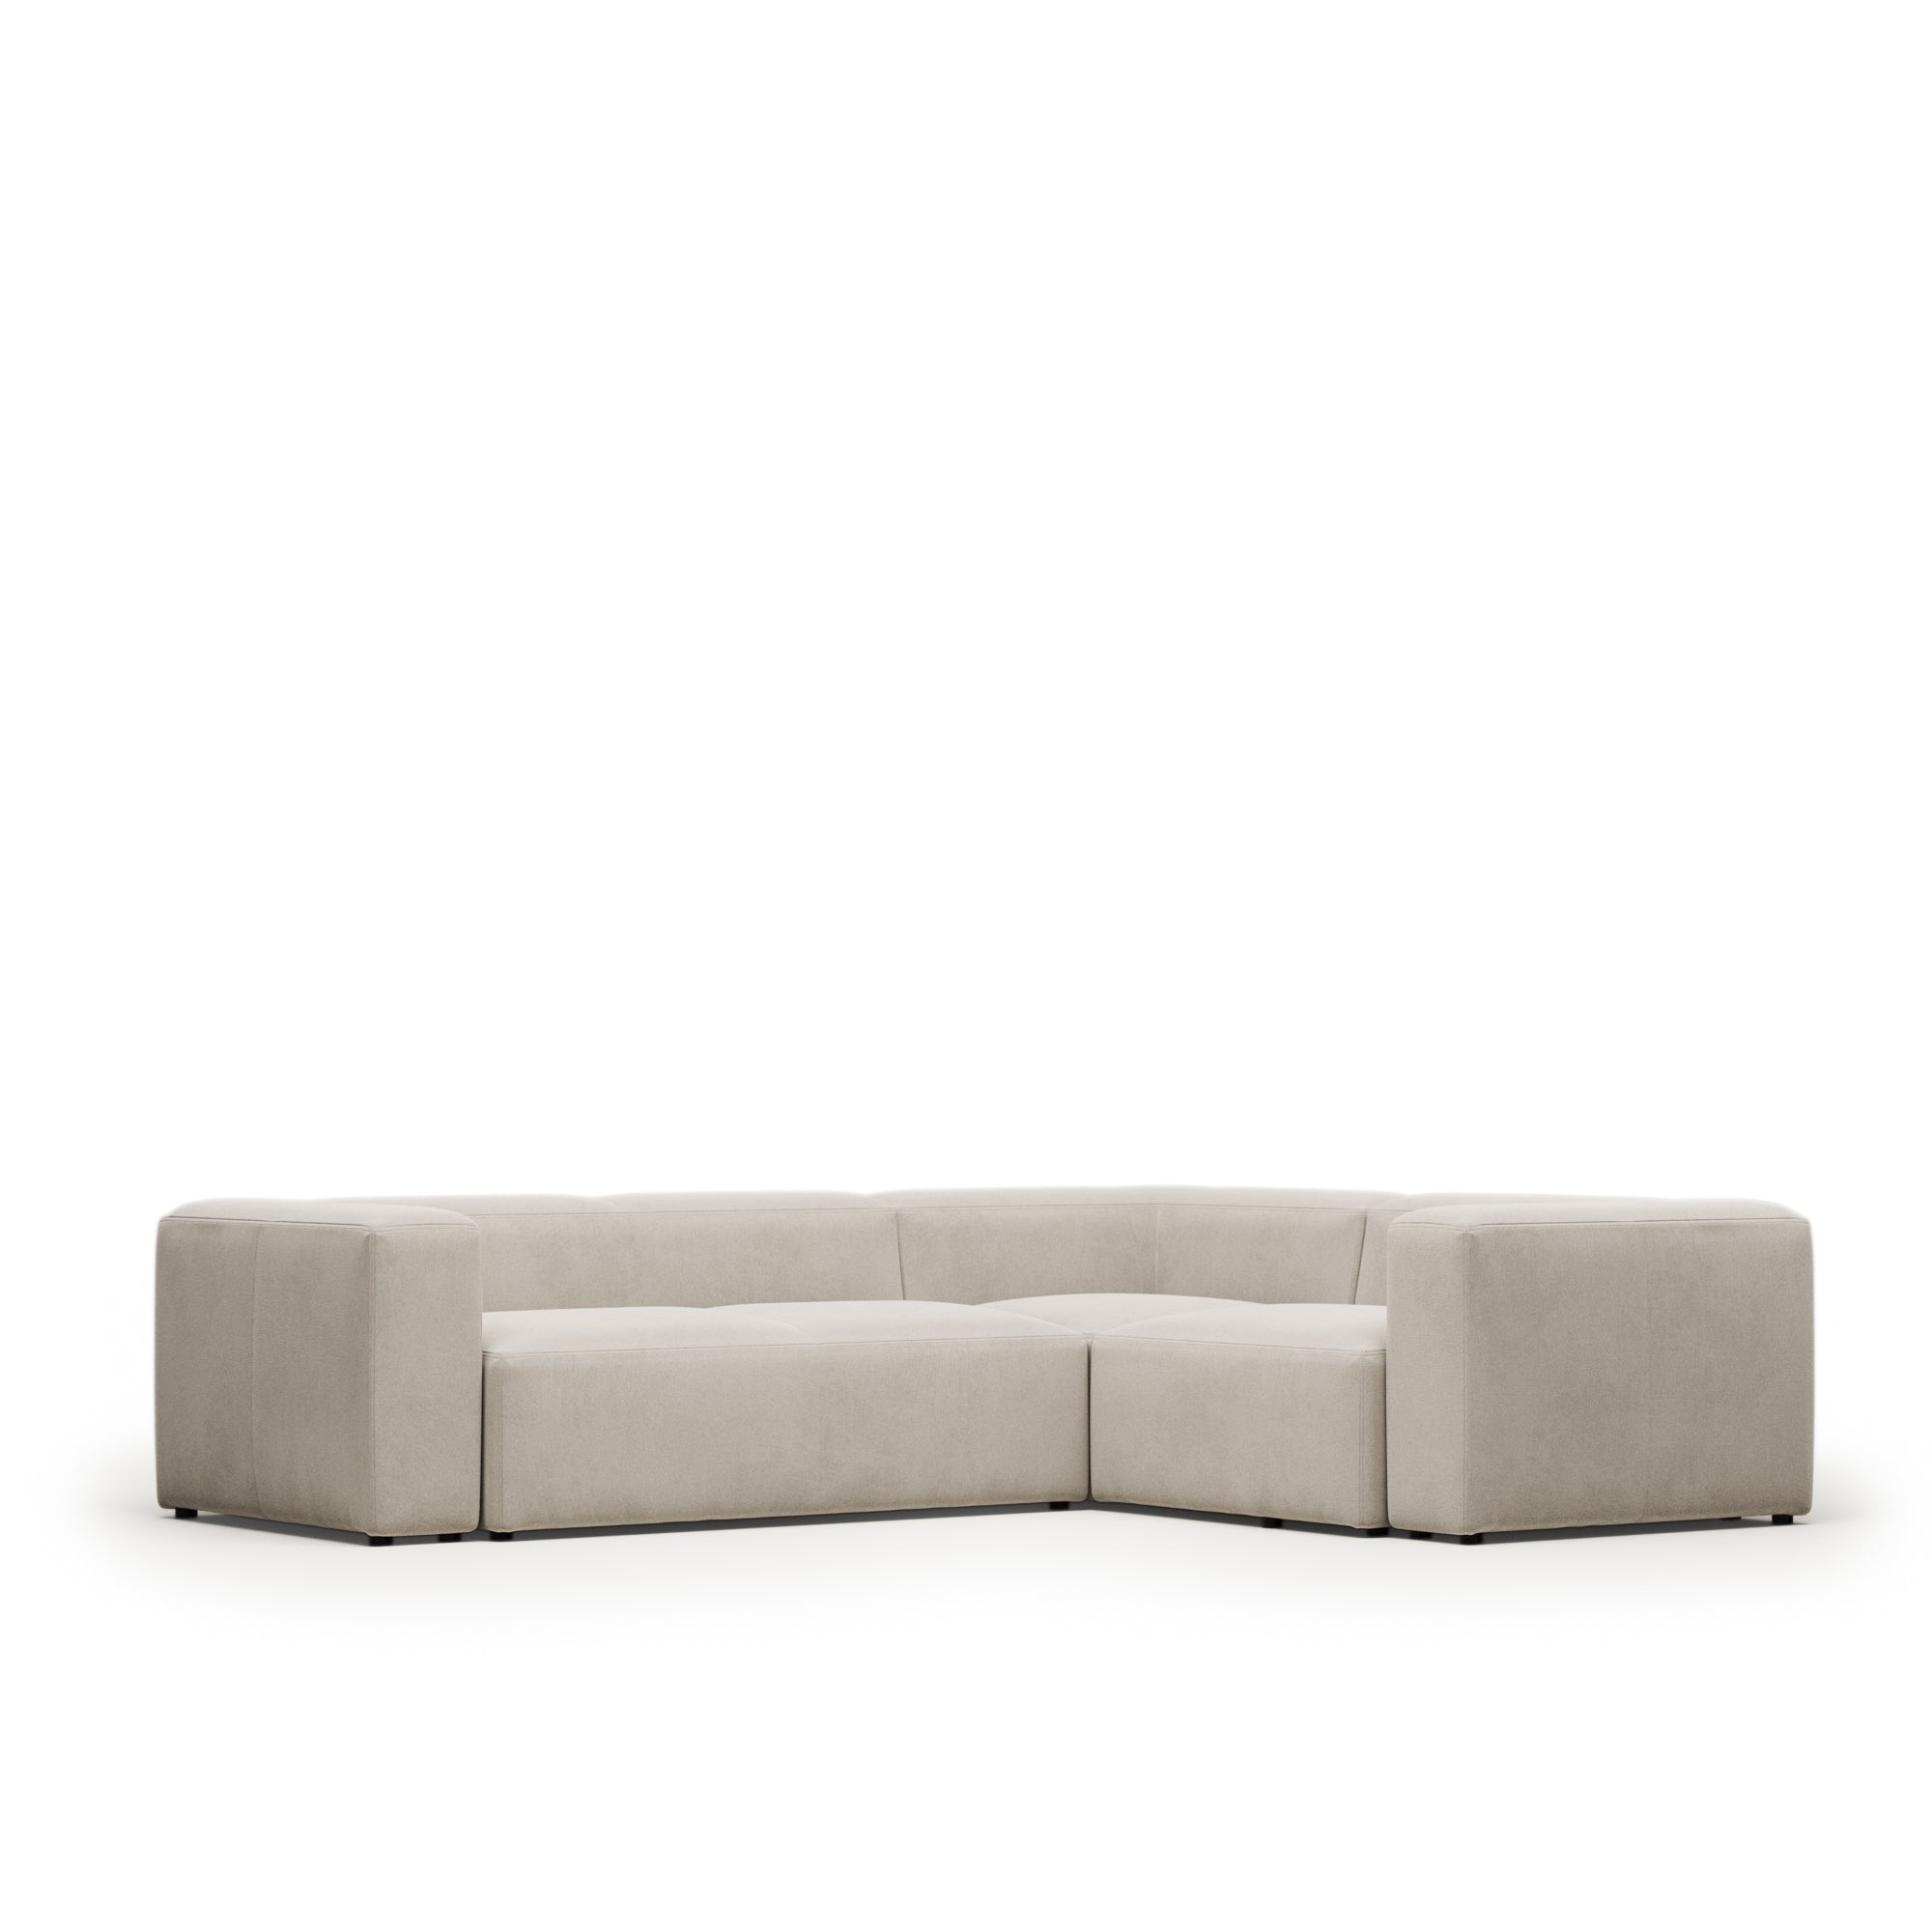 Blok 3 seater corner sofa in beige, 290 x 230 cm / 230 cm 290 cm